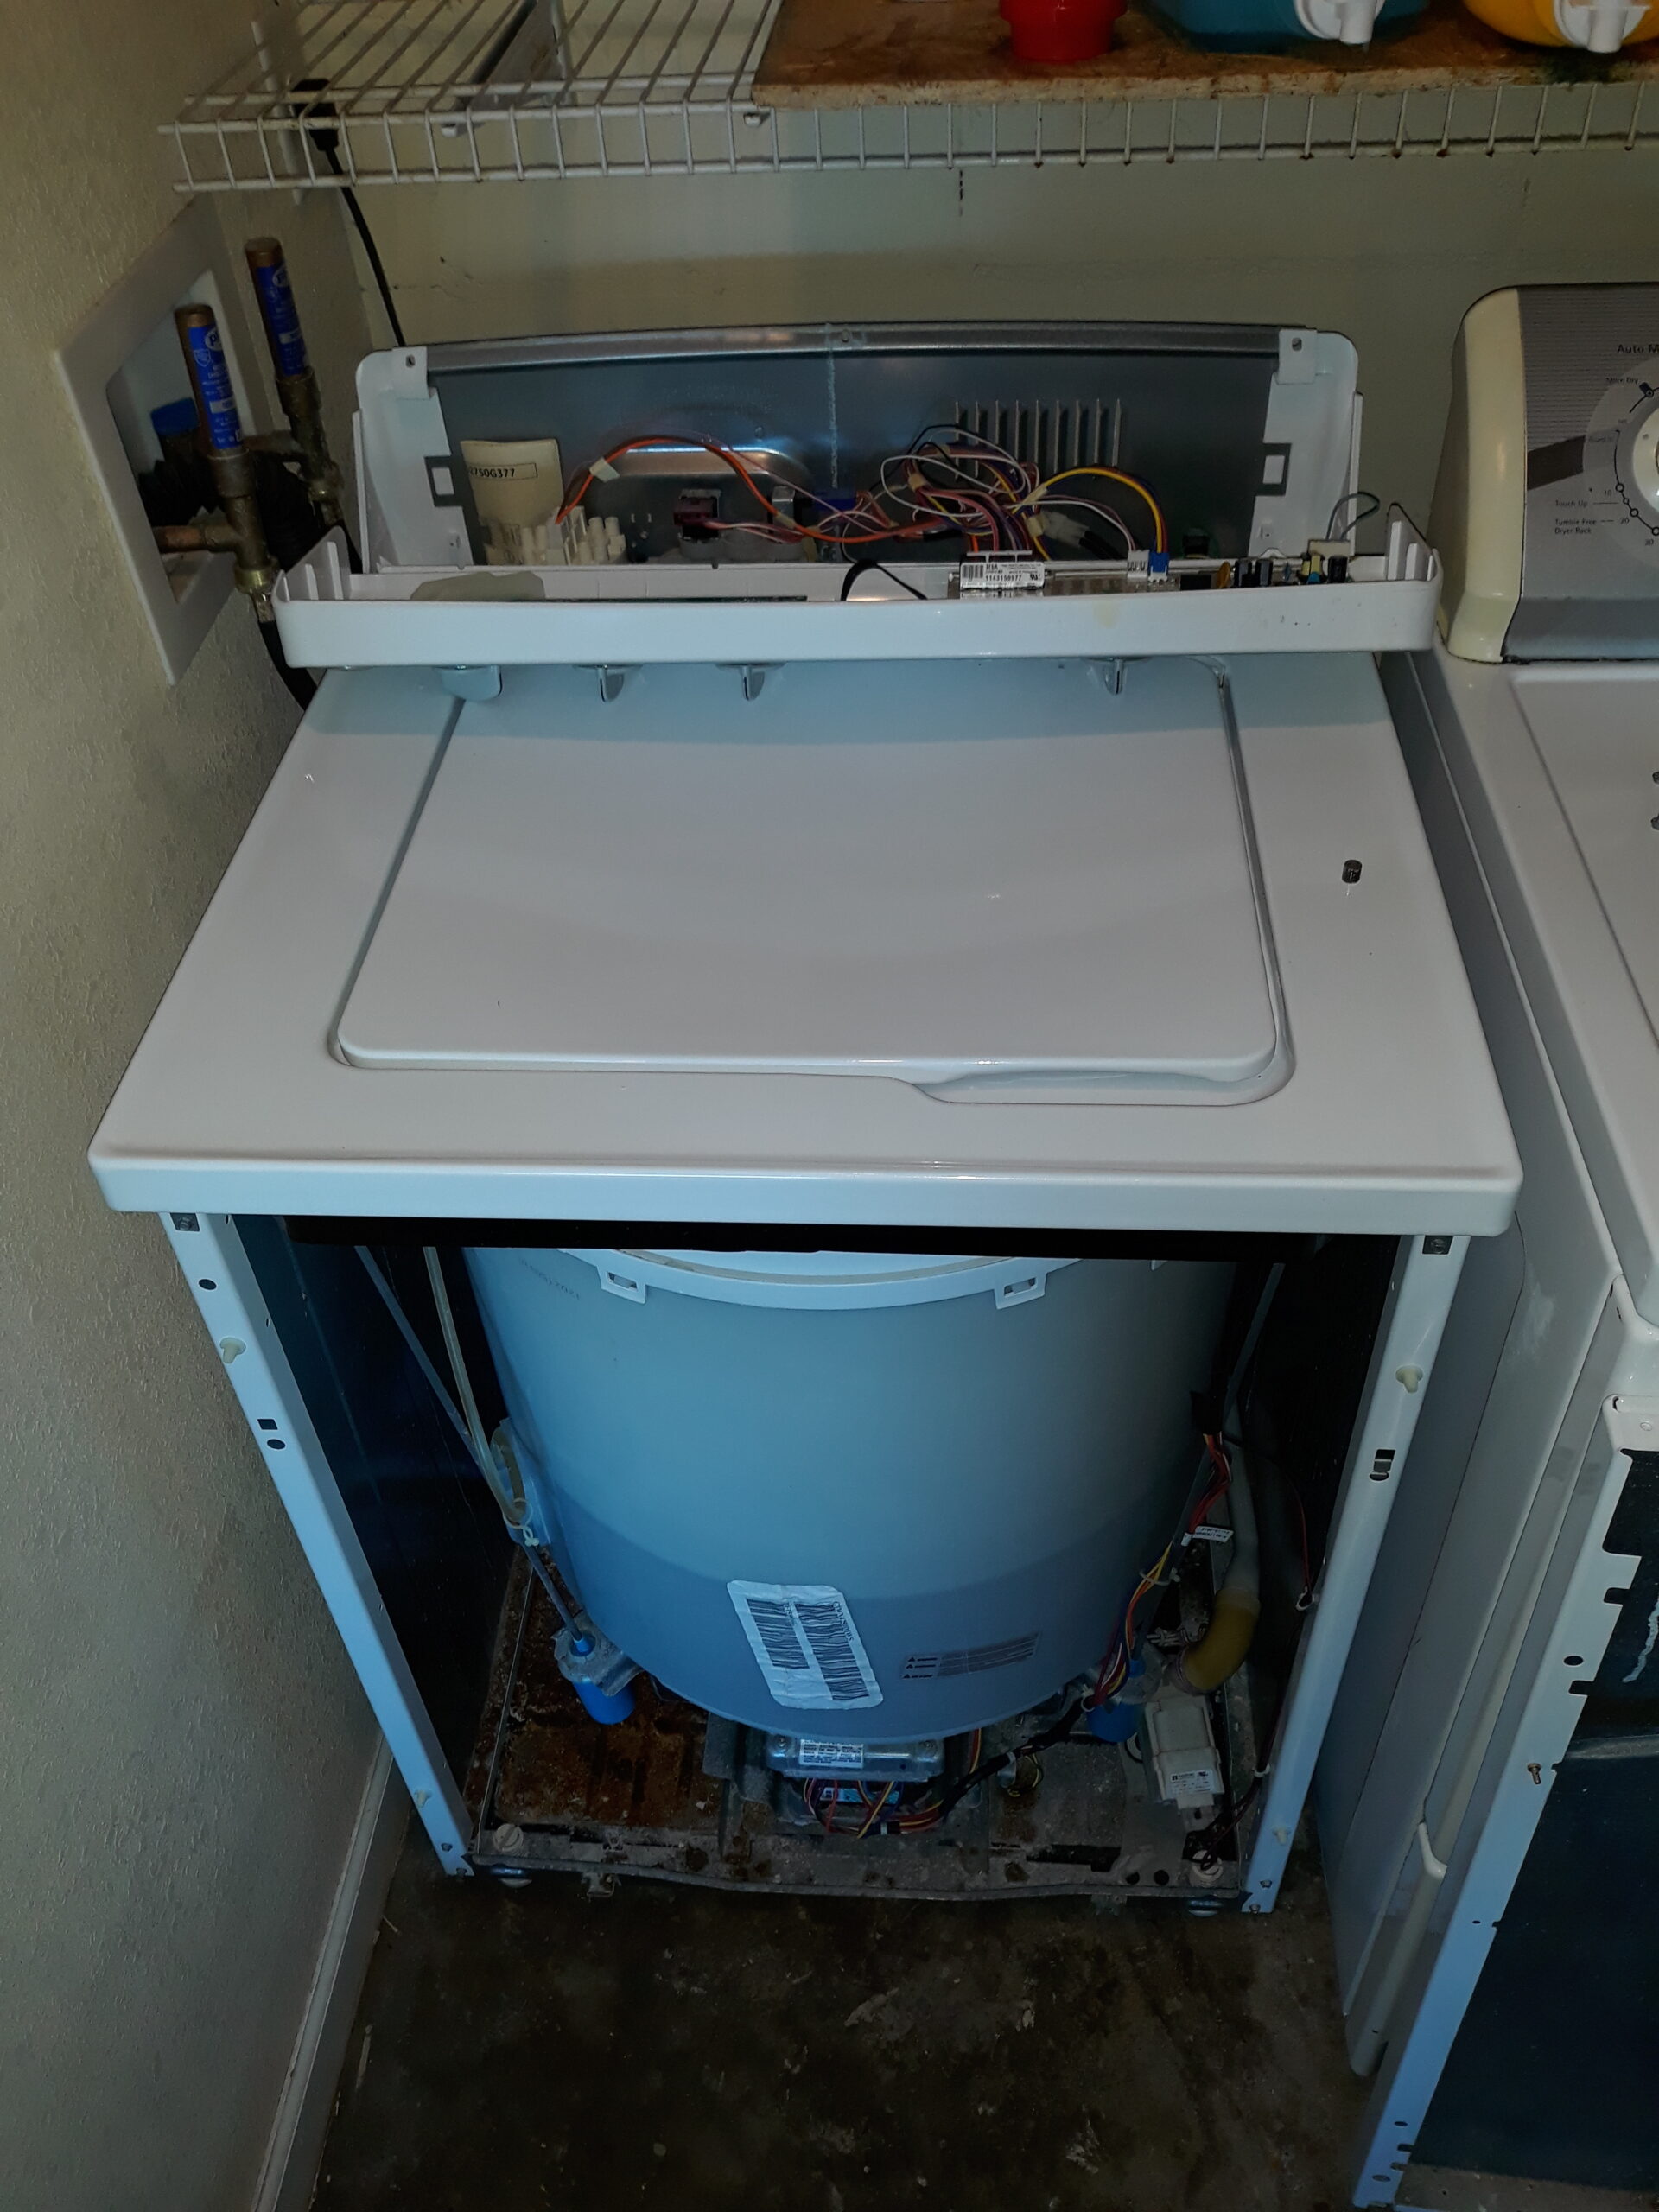 appliance repair washing machine repair install main control board breckenridge cir pine hills orlando fl 32818